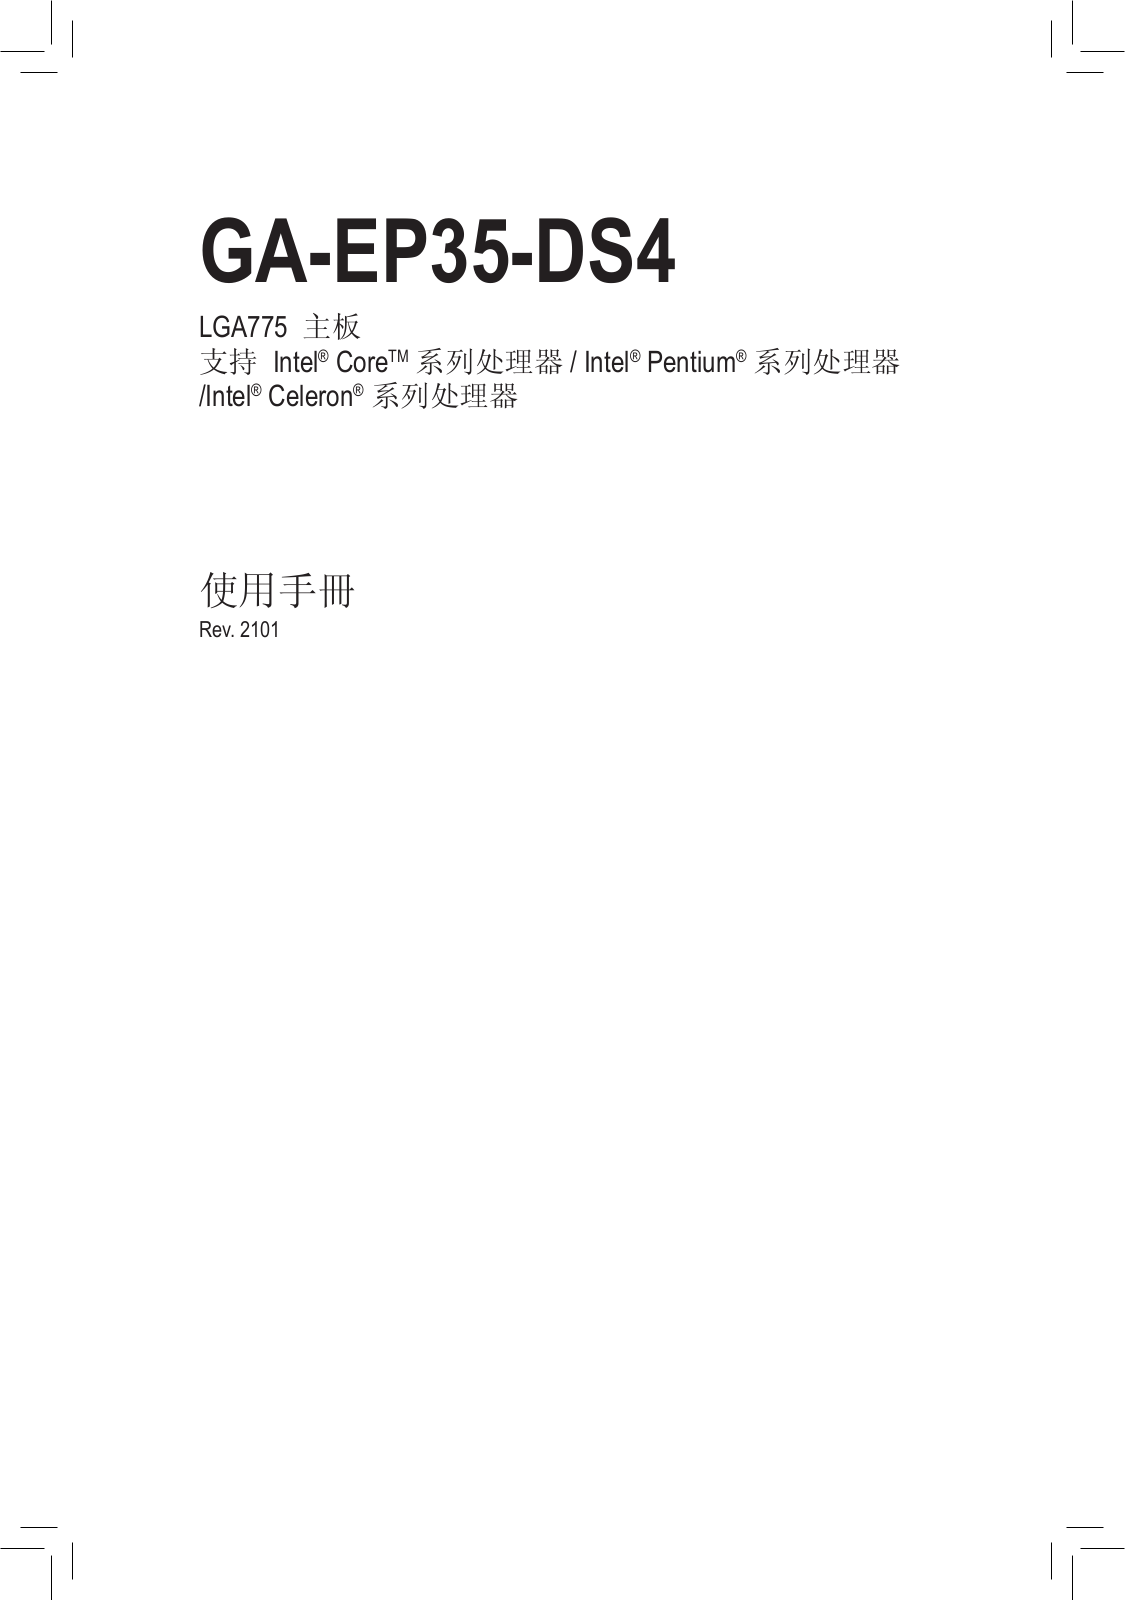 Gigabyte GA-EP35-DS4 User Manual